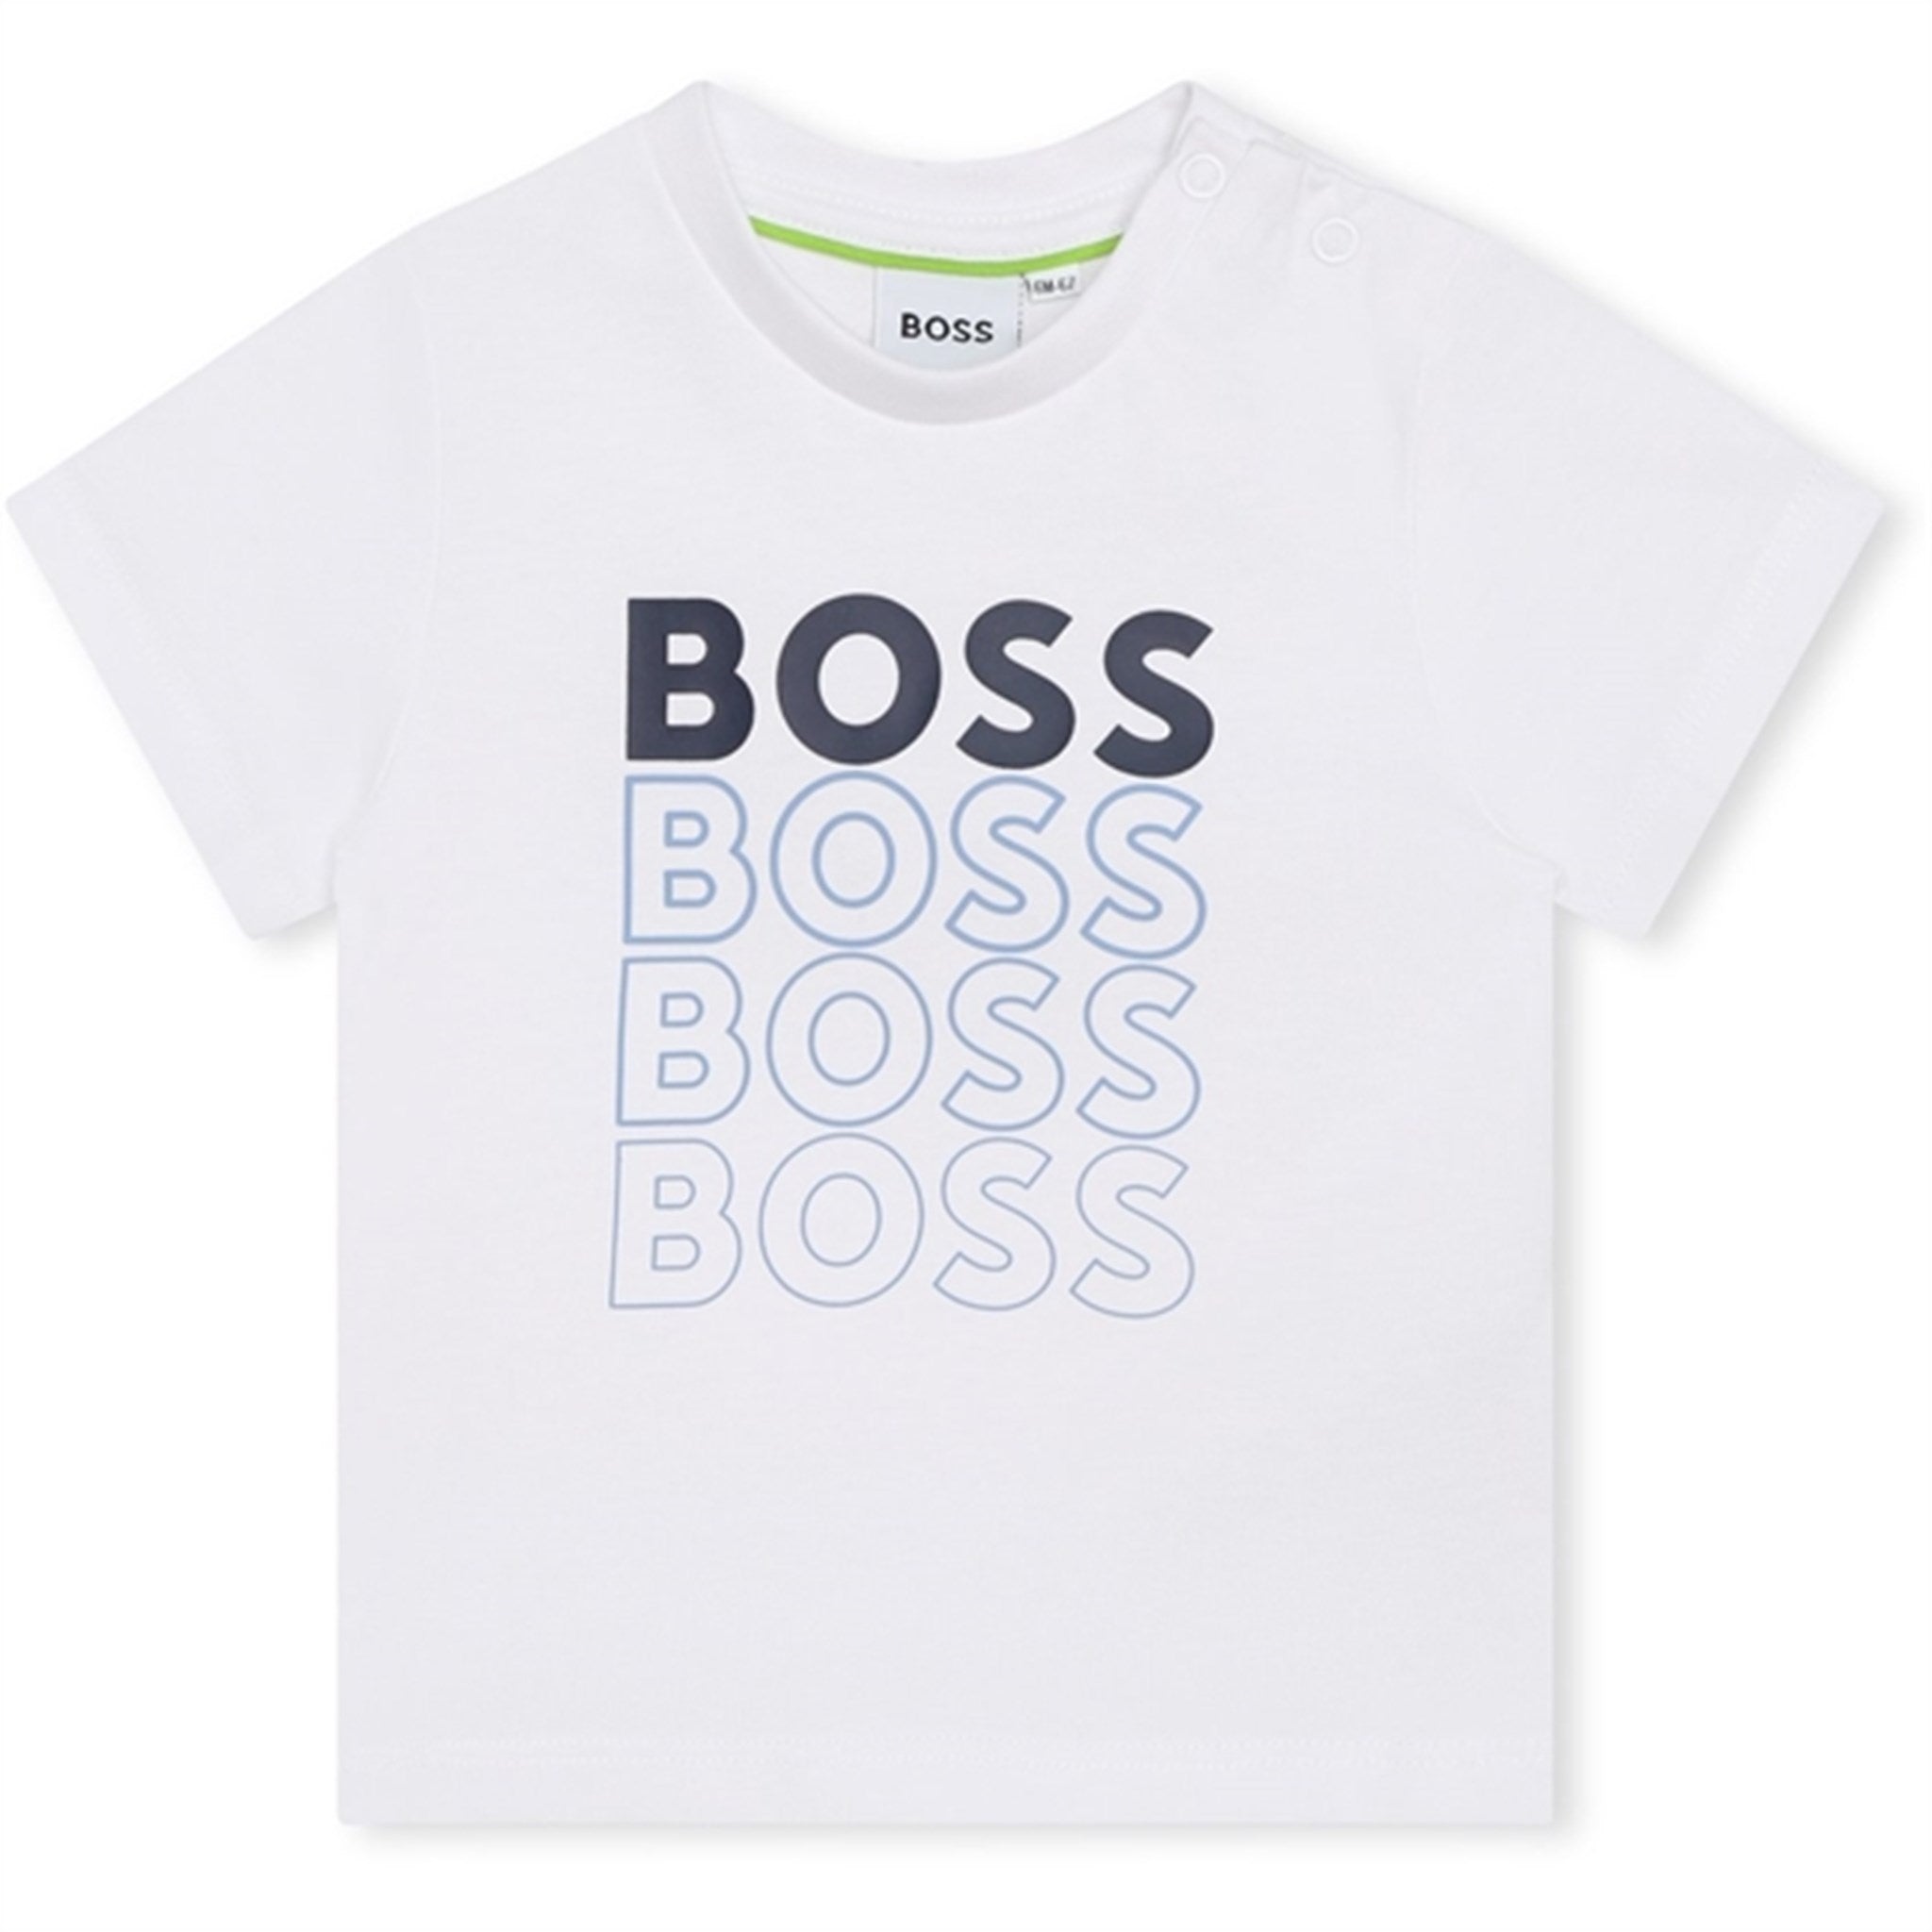 Hugo Boss Bebis T-shirt White